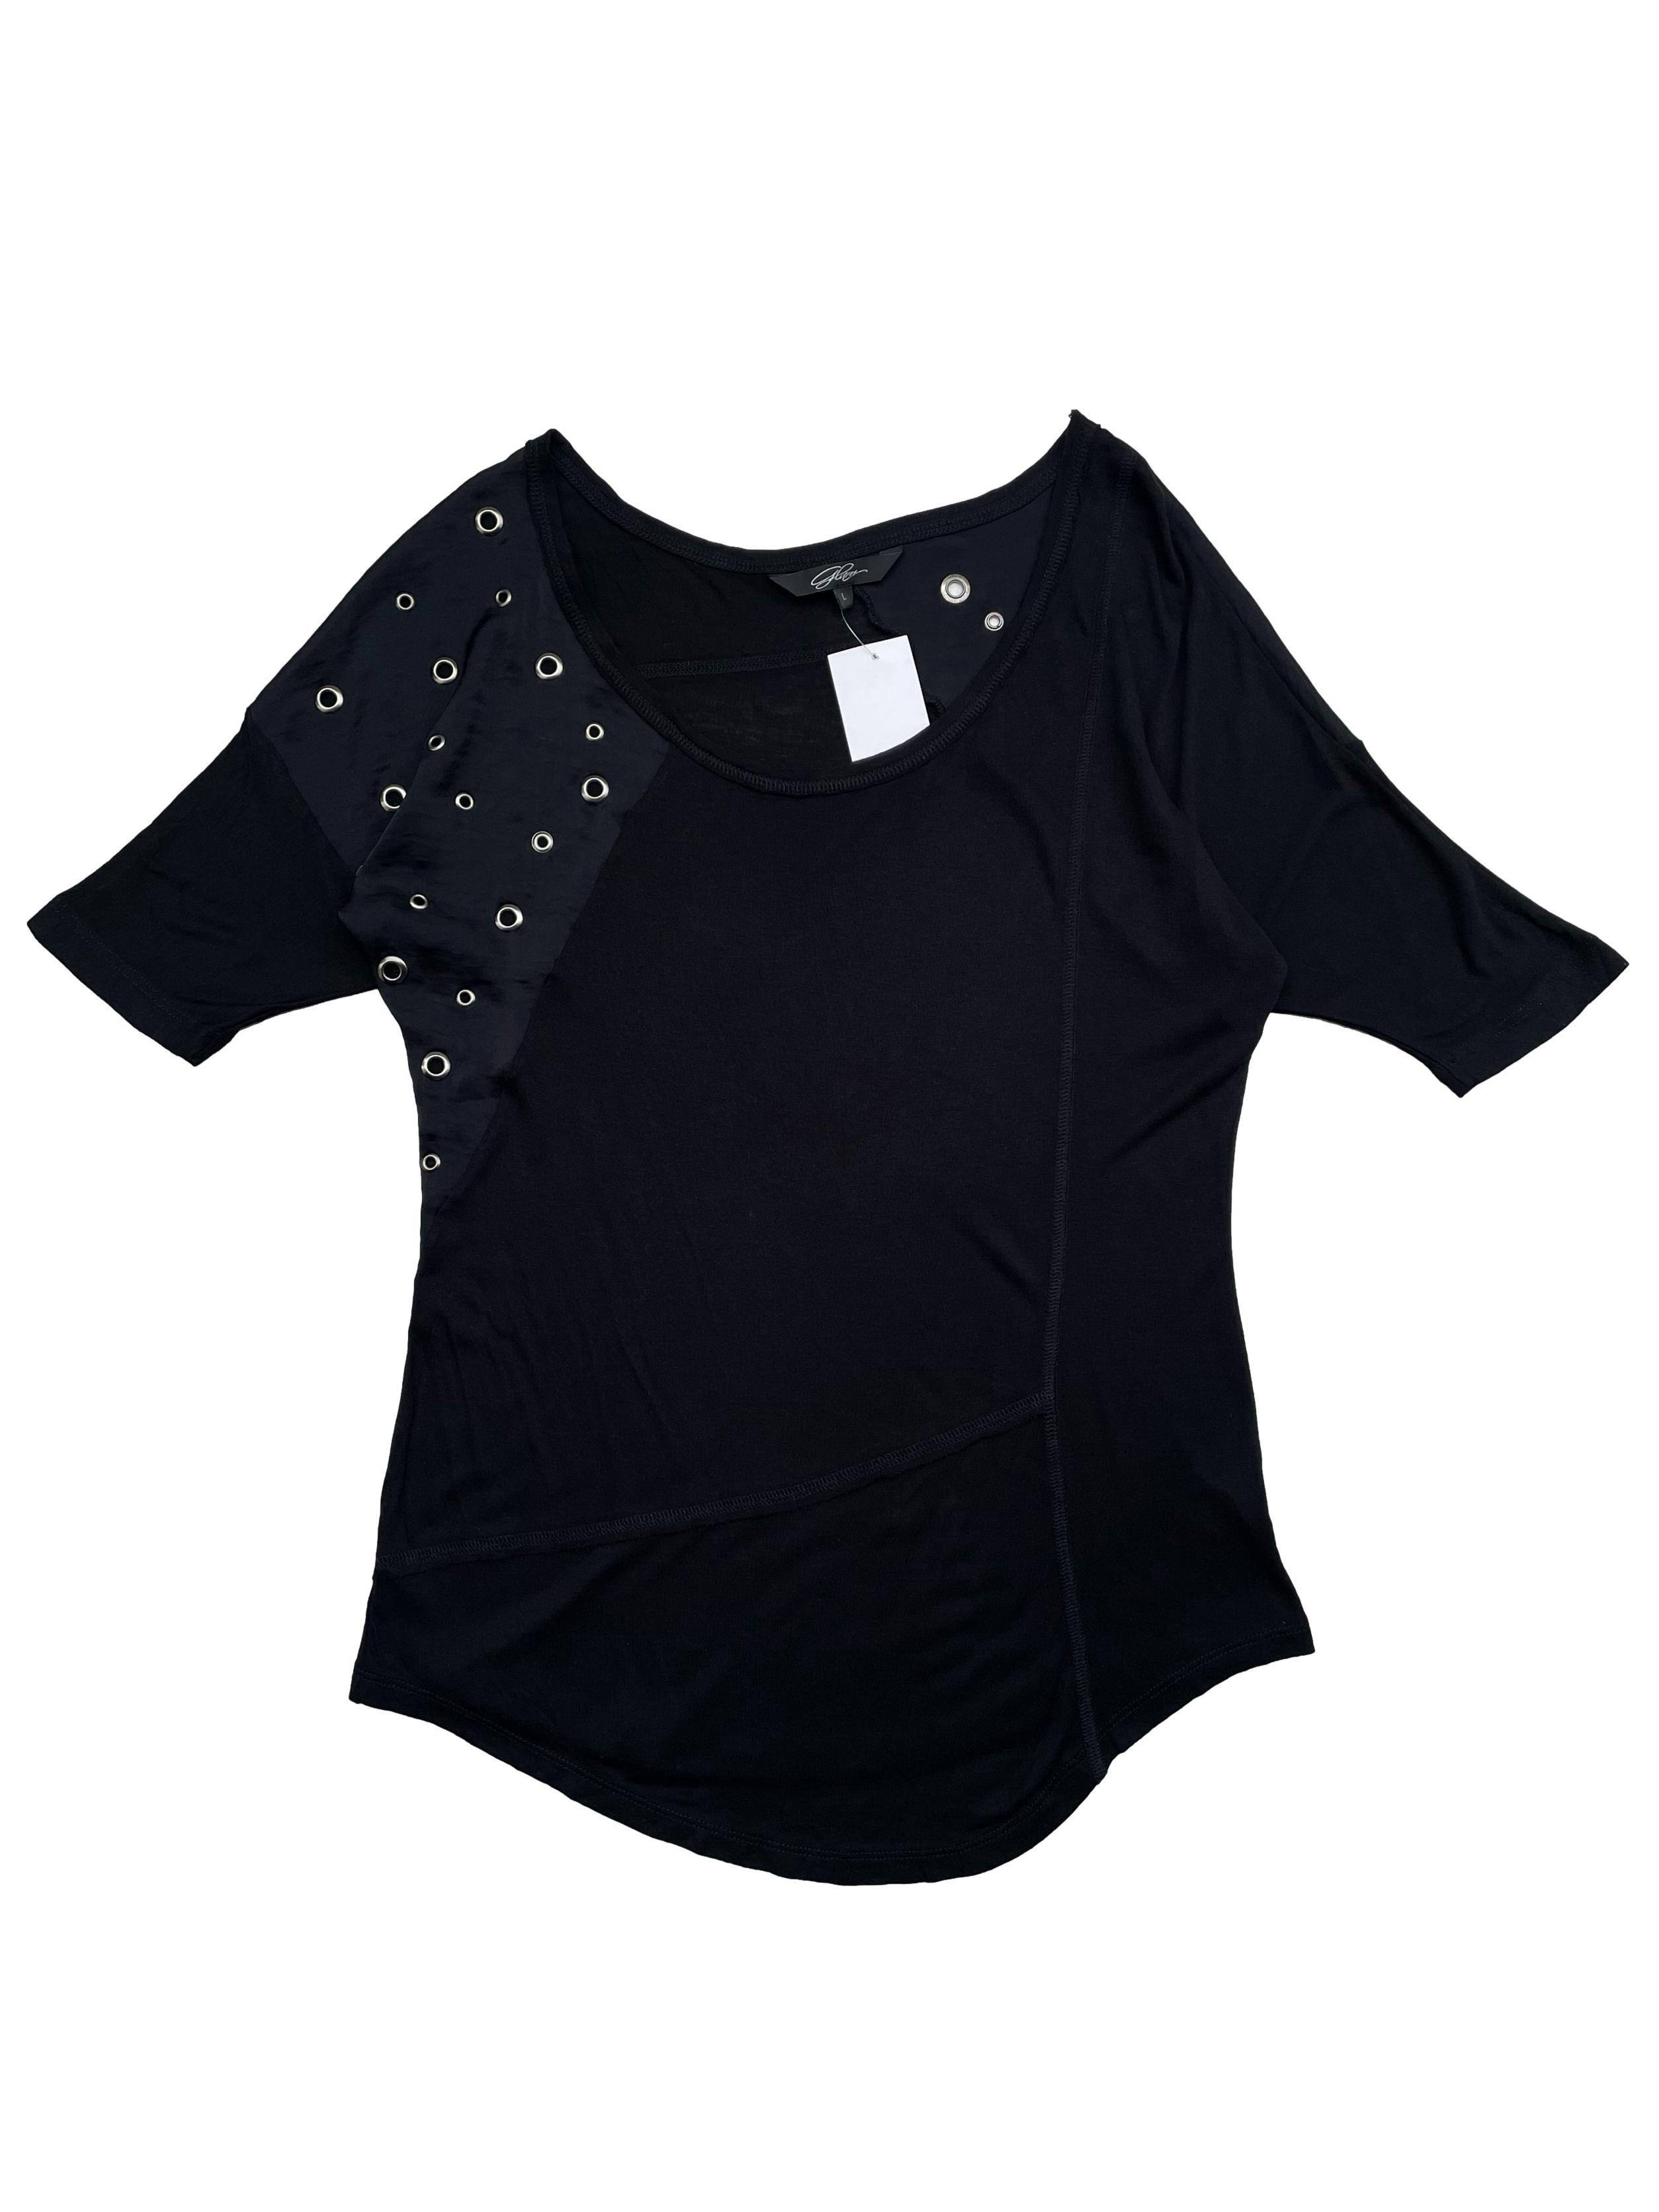 Blusa Glam negra con mangas murciélago y cadera ajustada, cortes asimétricos y ojales metálicos. Busto 106cm, Largo 60cm.